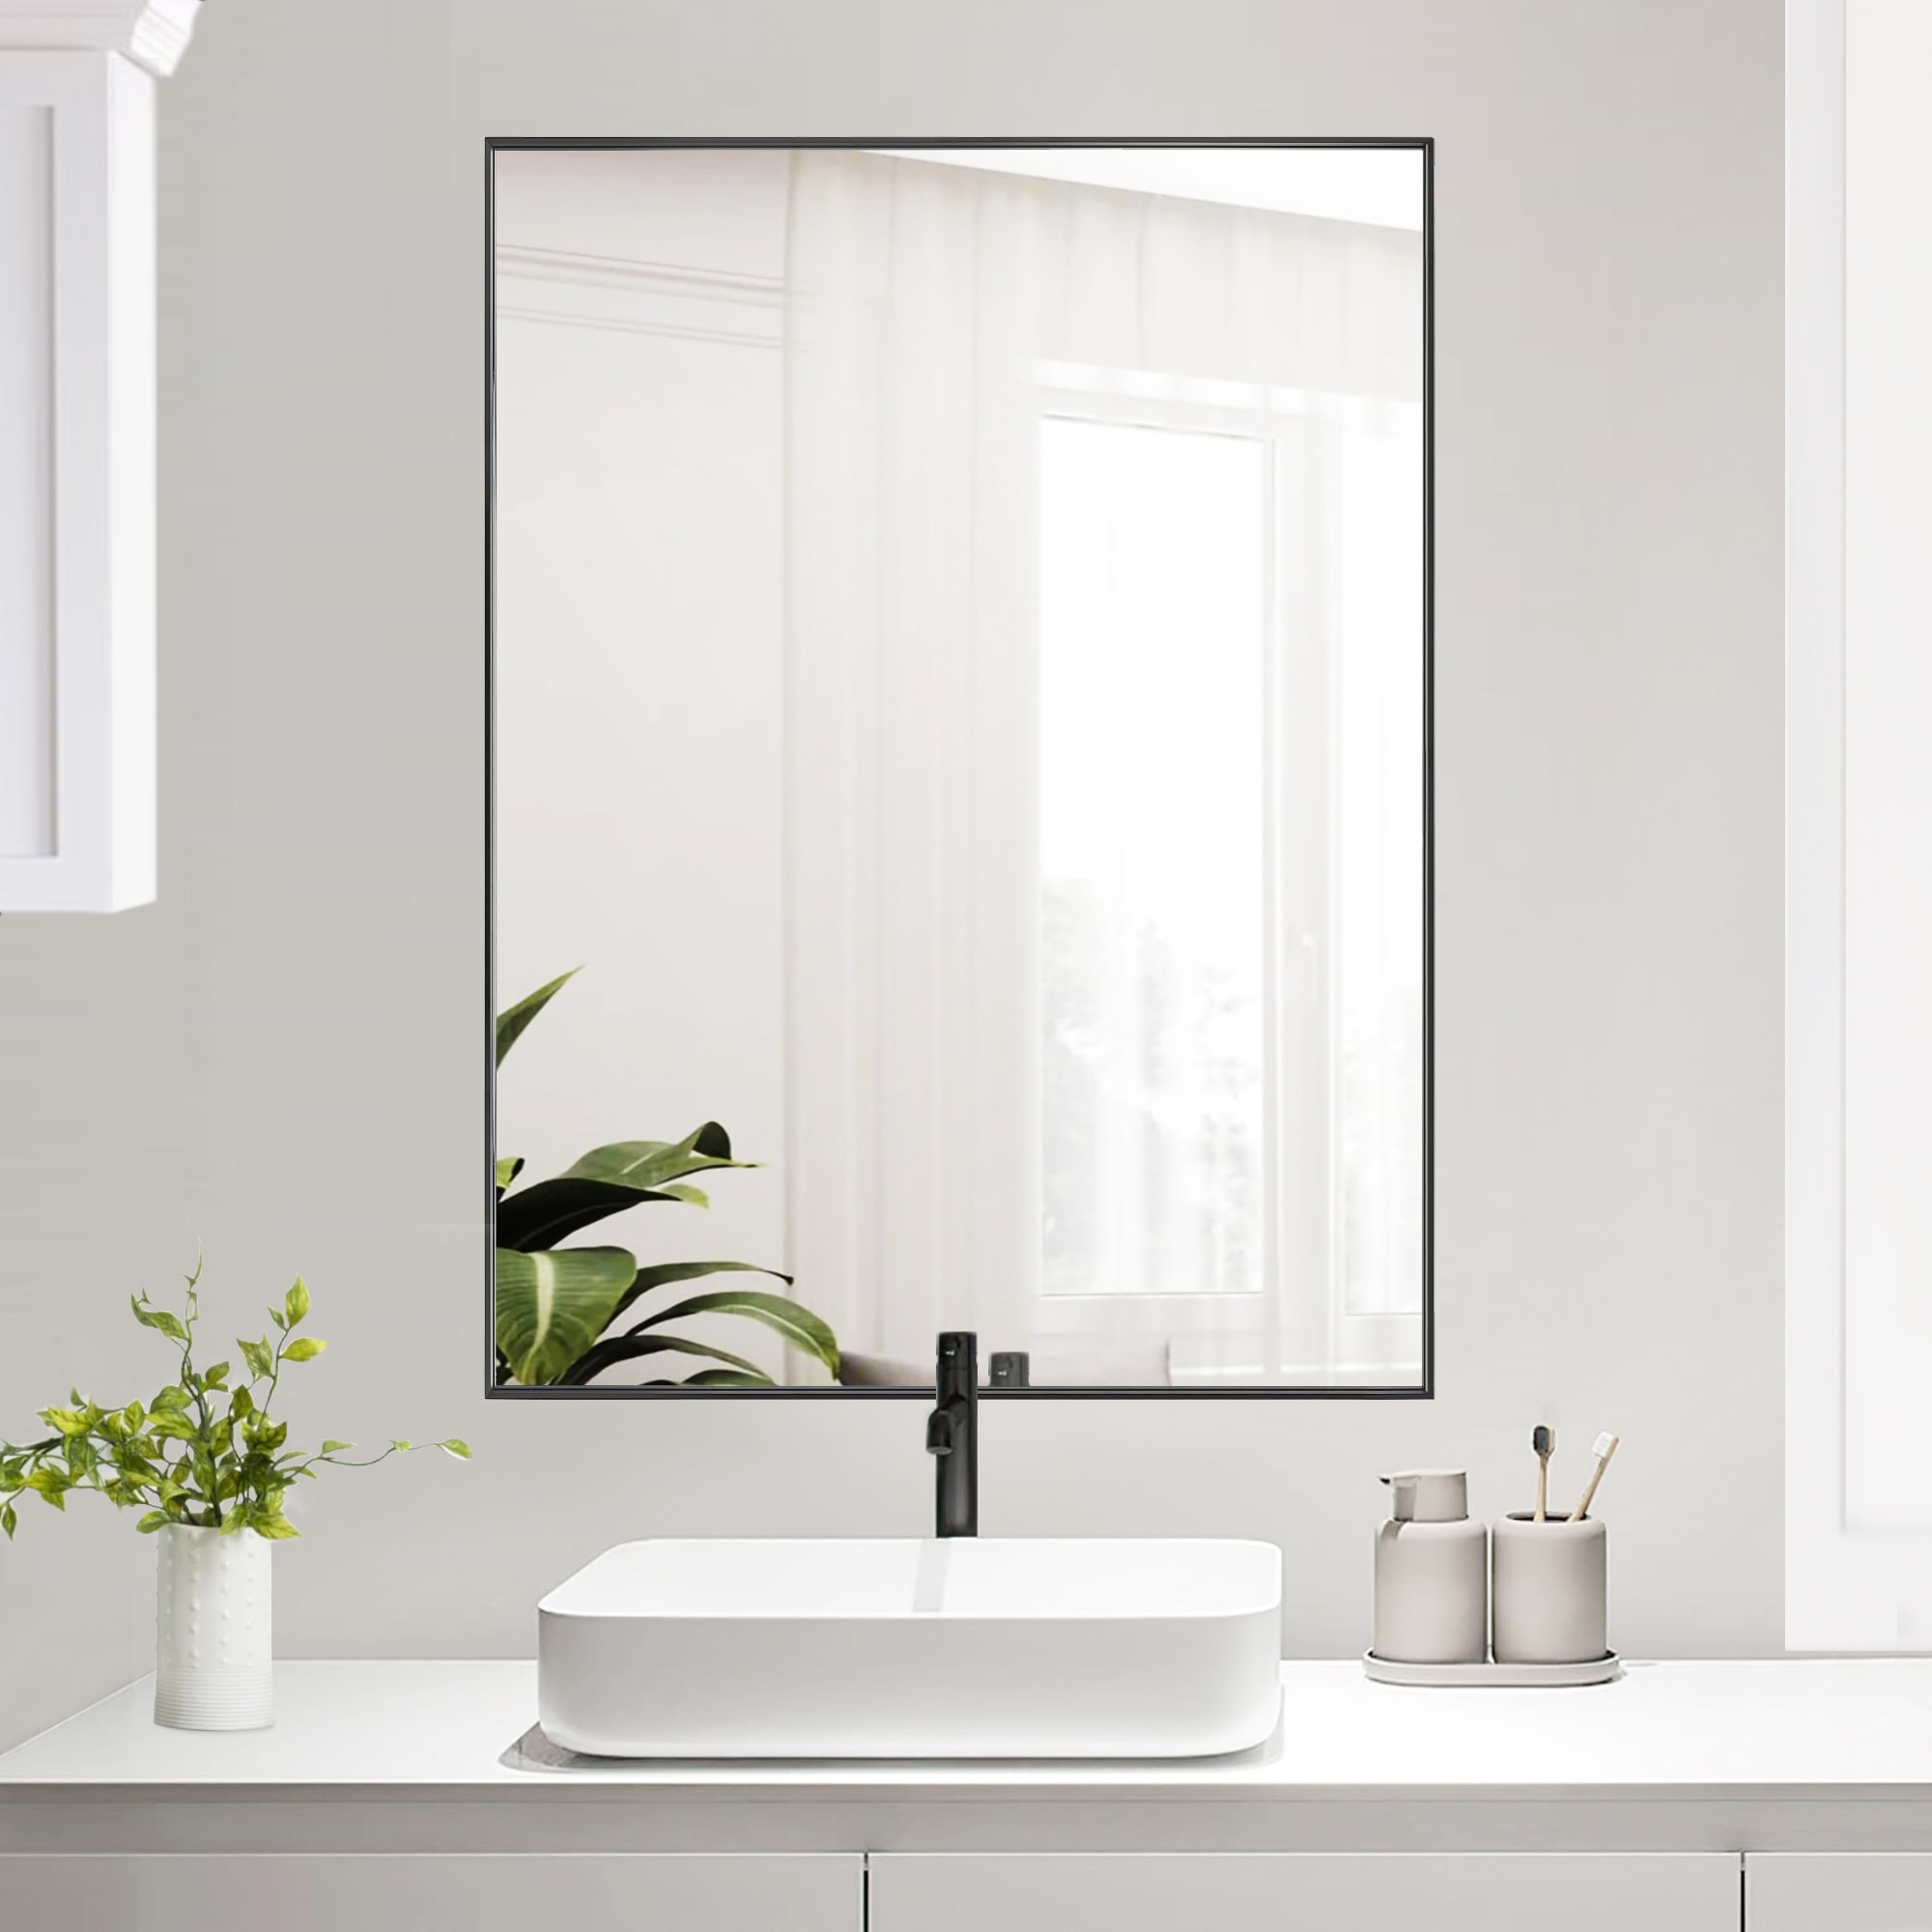 GETLEDEL 40-in x 30-in Framed Bathroom Vanity Mirror (Black) in the ...